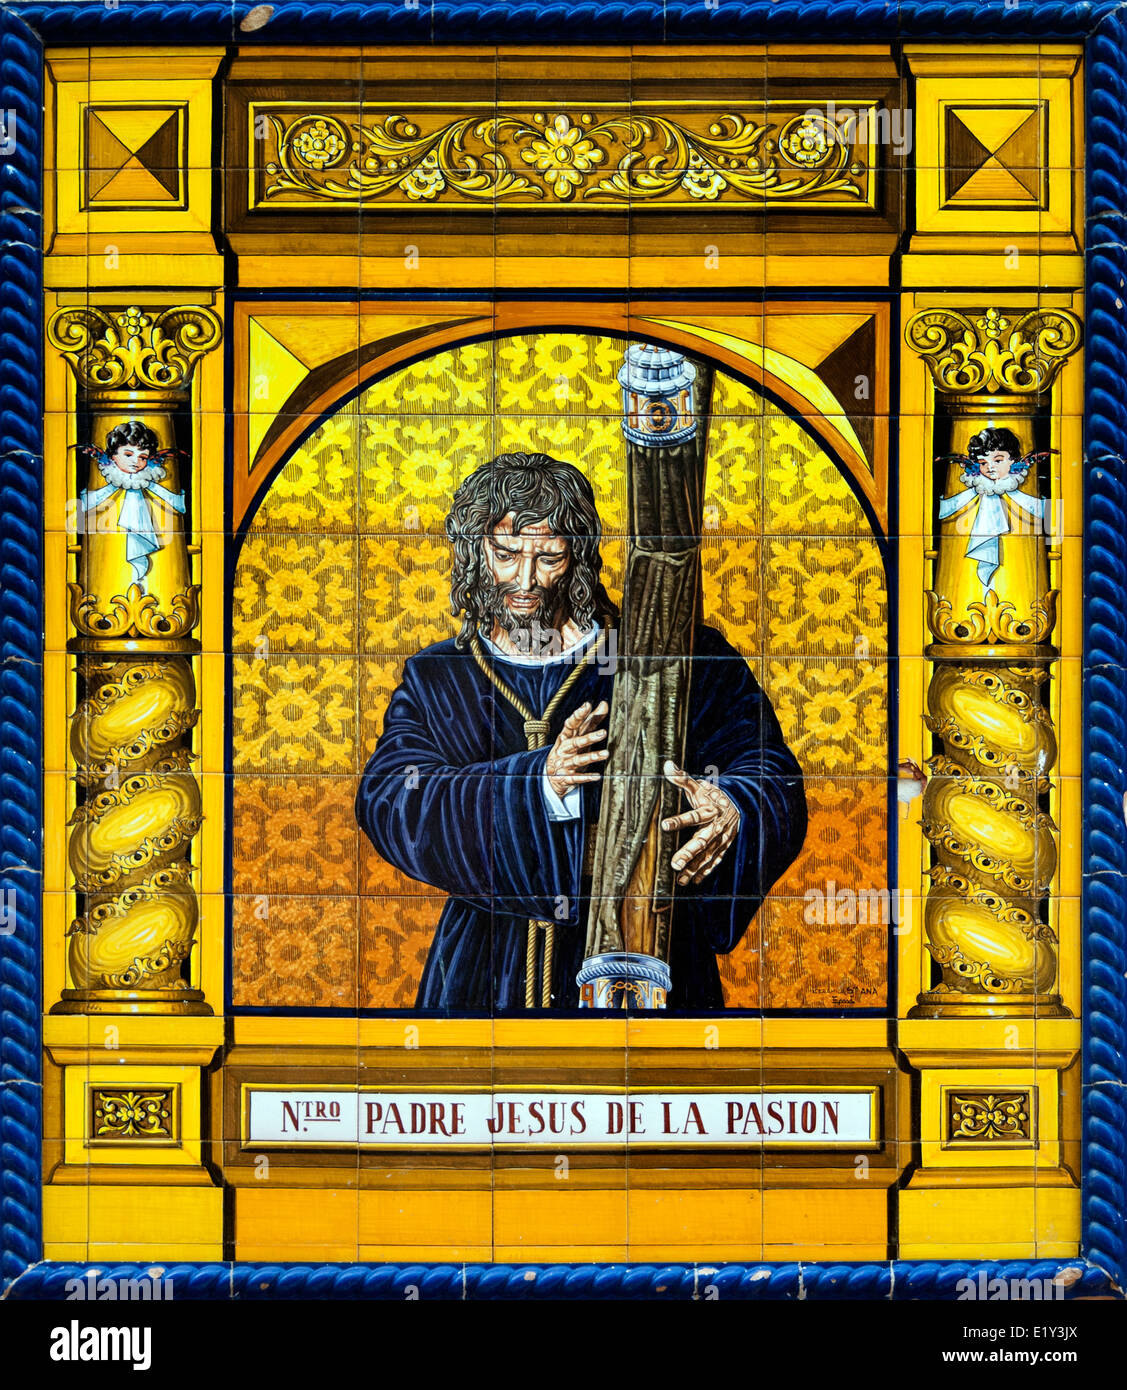 Padre Jesus de la Pasion - Padre Gesù della Passione Malaga Spagna chiesa cattolica di ceramica cristiana Foto Stock